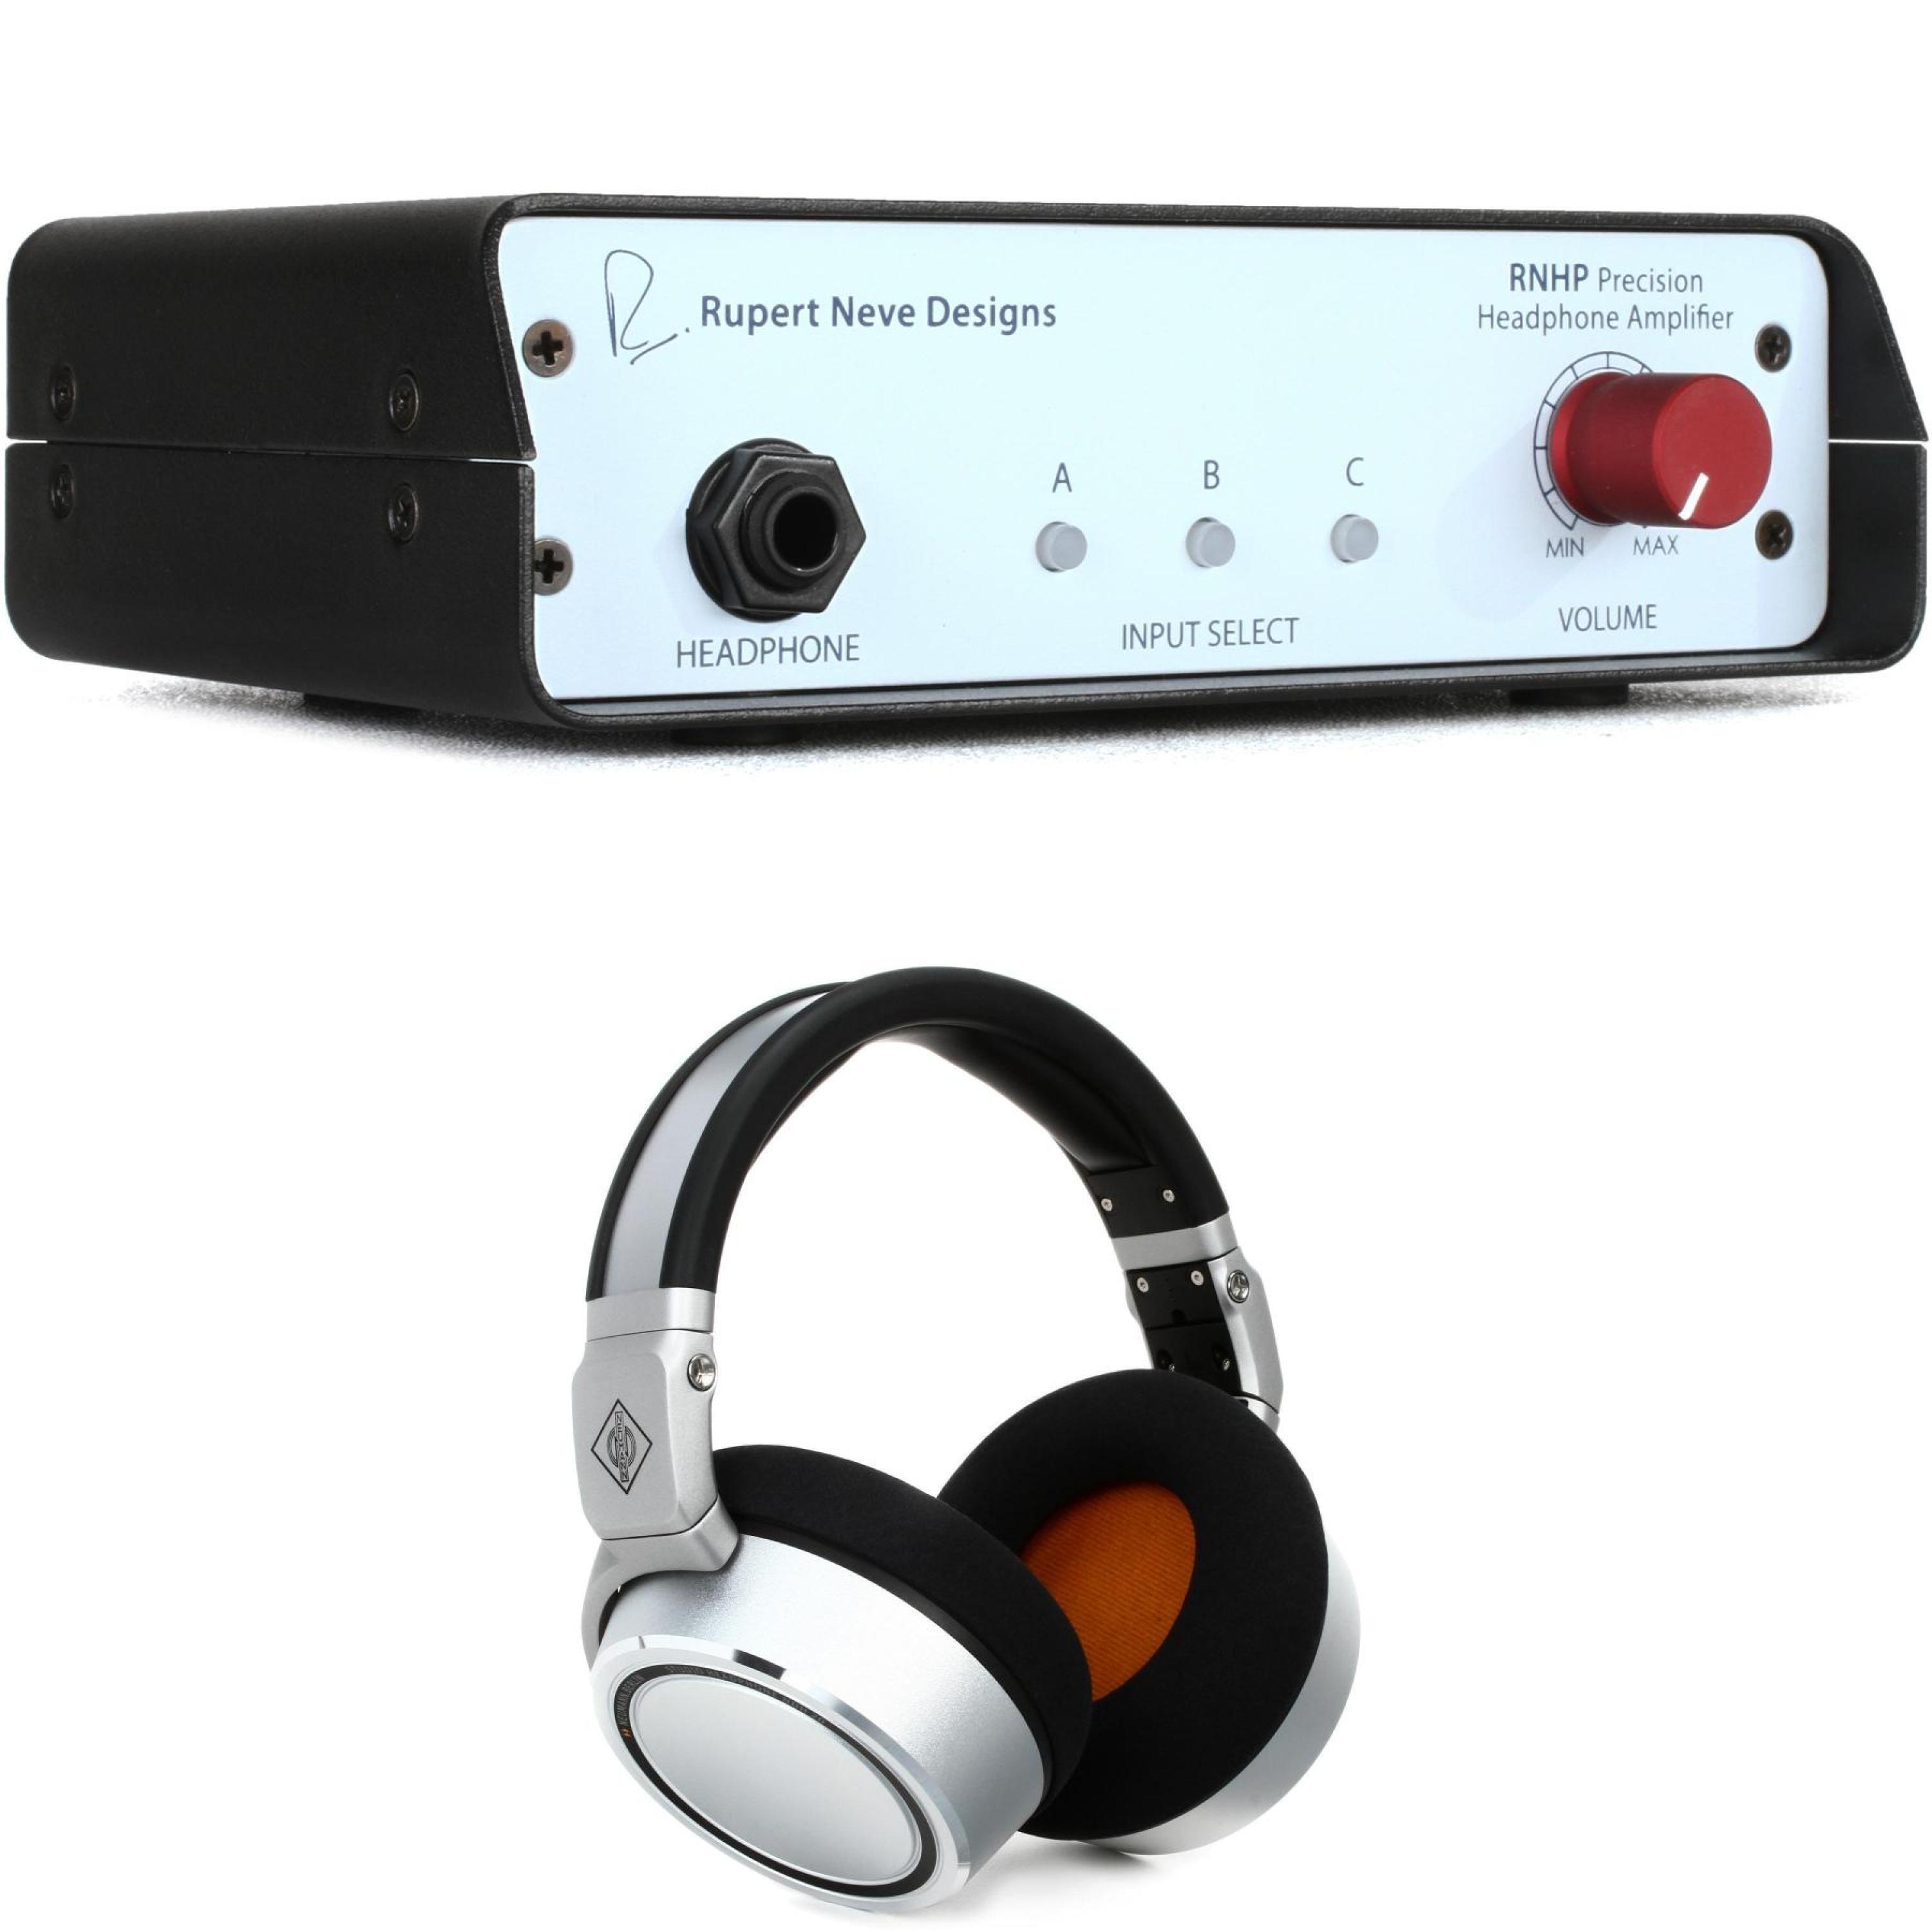 Rupert Neve Designs RNHP Headphone Amplifier and NDH 20 Headphones